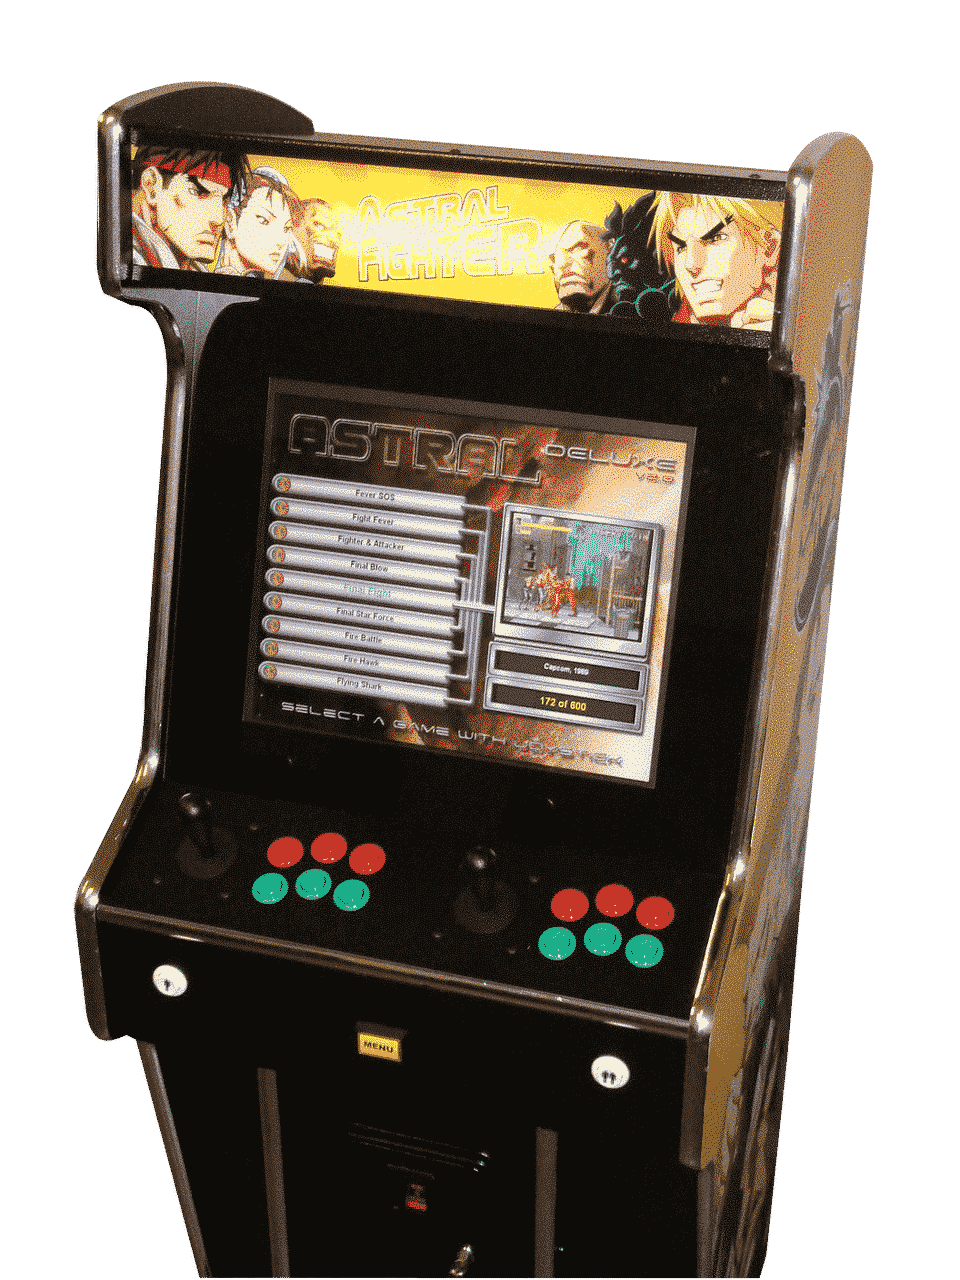 Astral Fighter Pro Arcade Machine